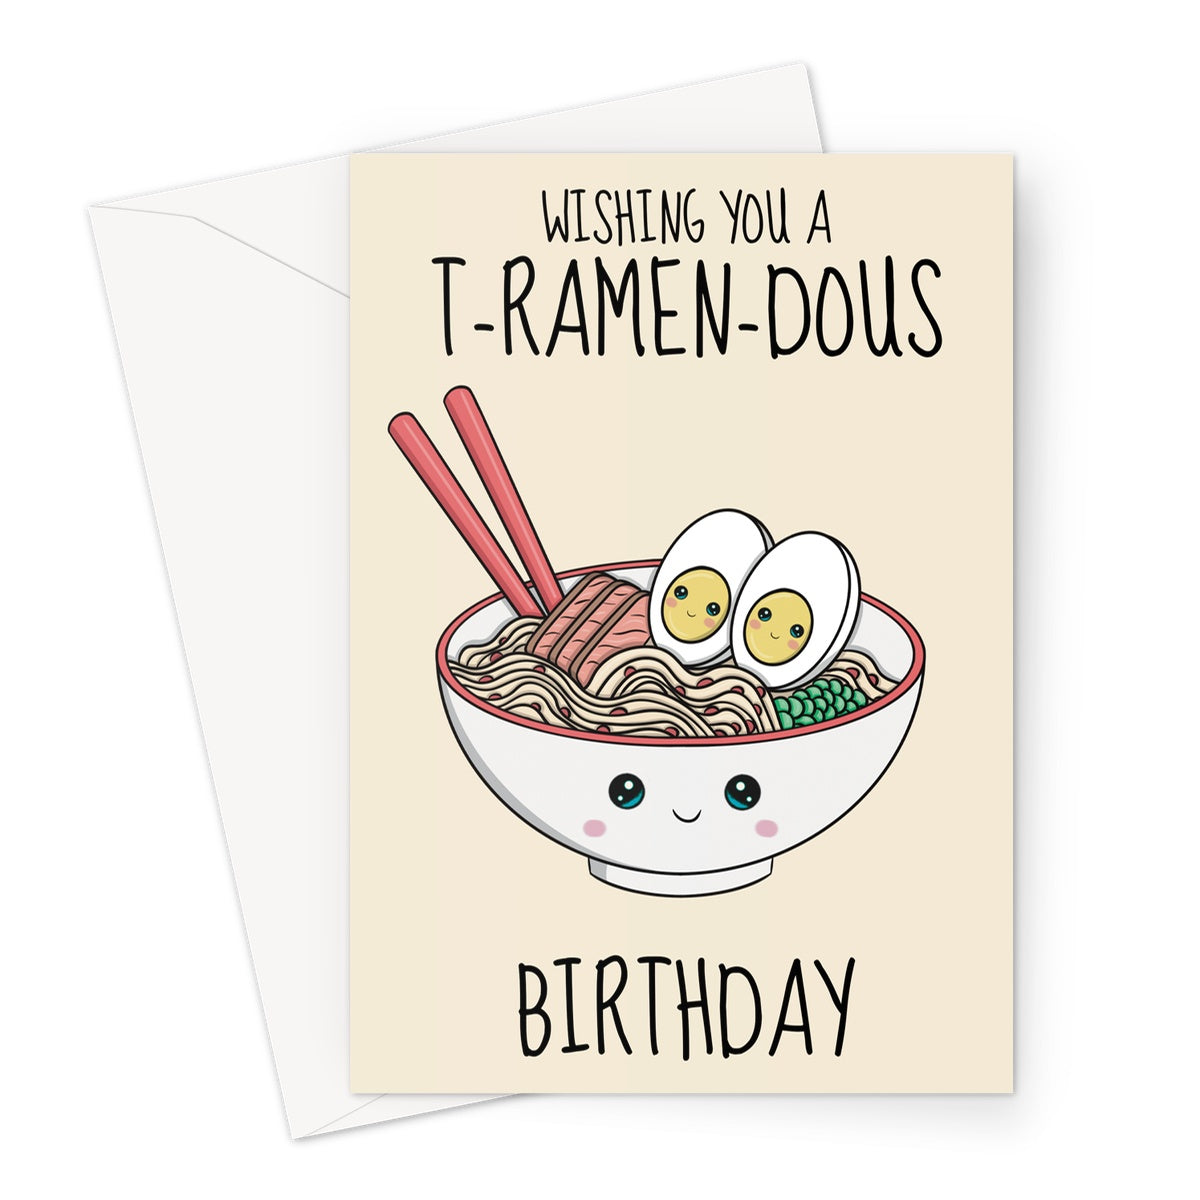 Cute ramen noodles birthday card.